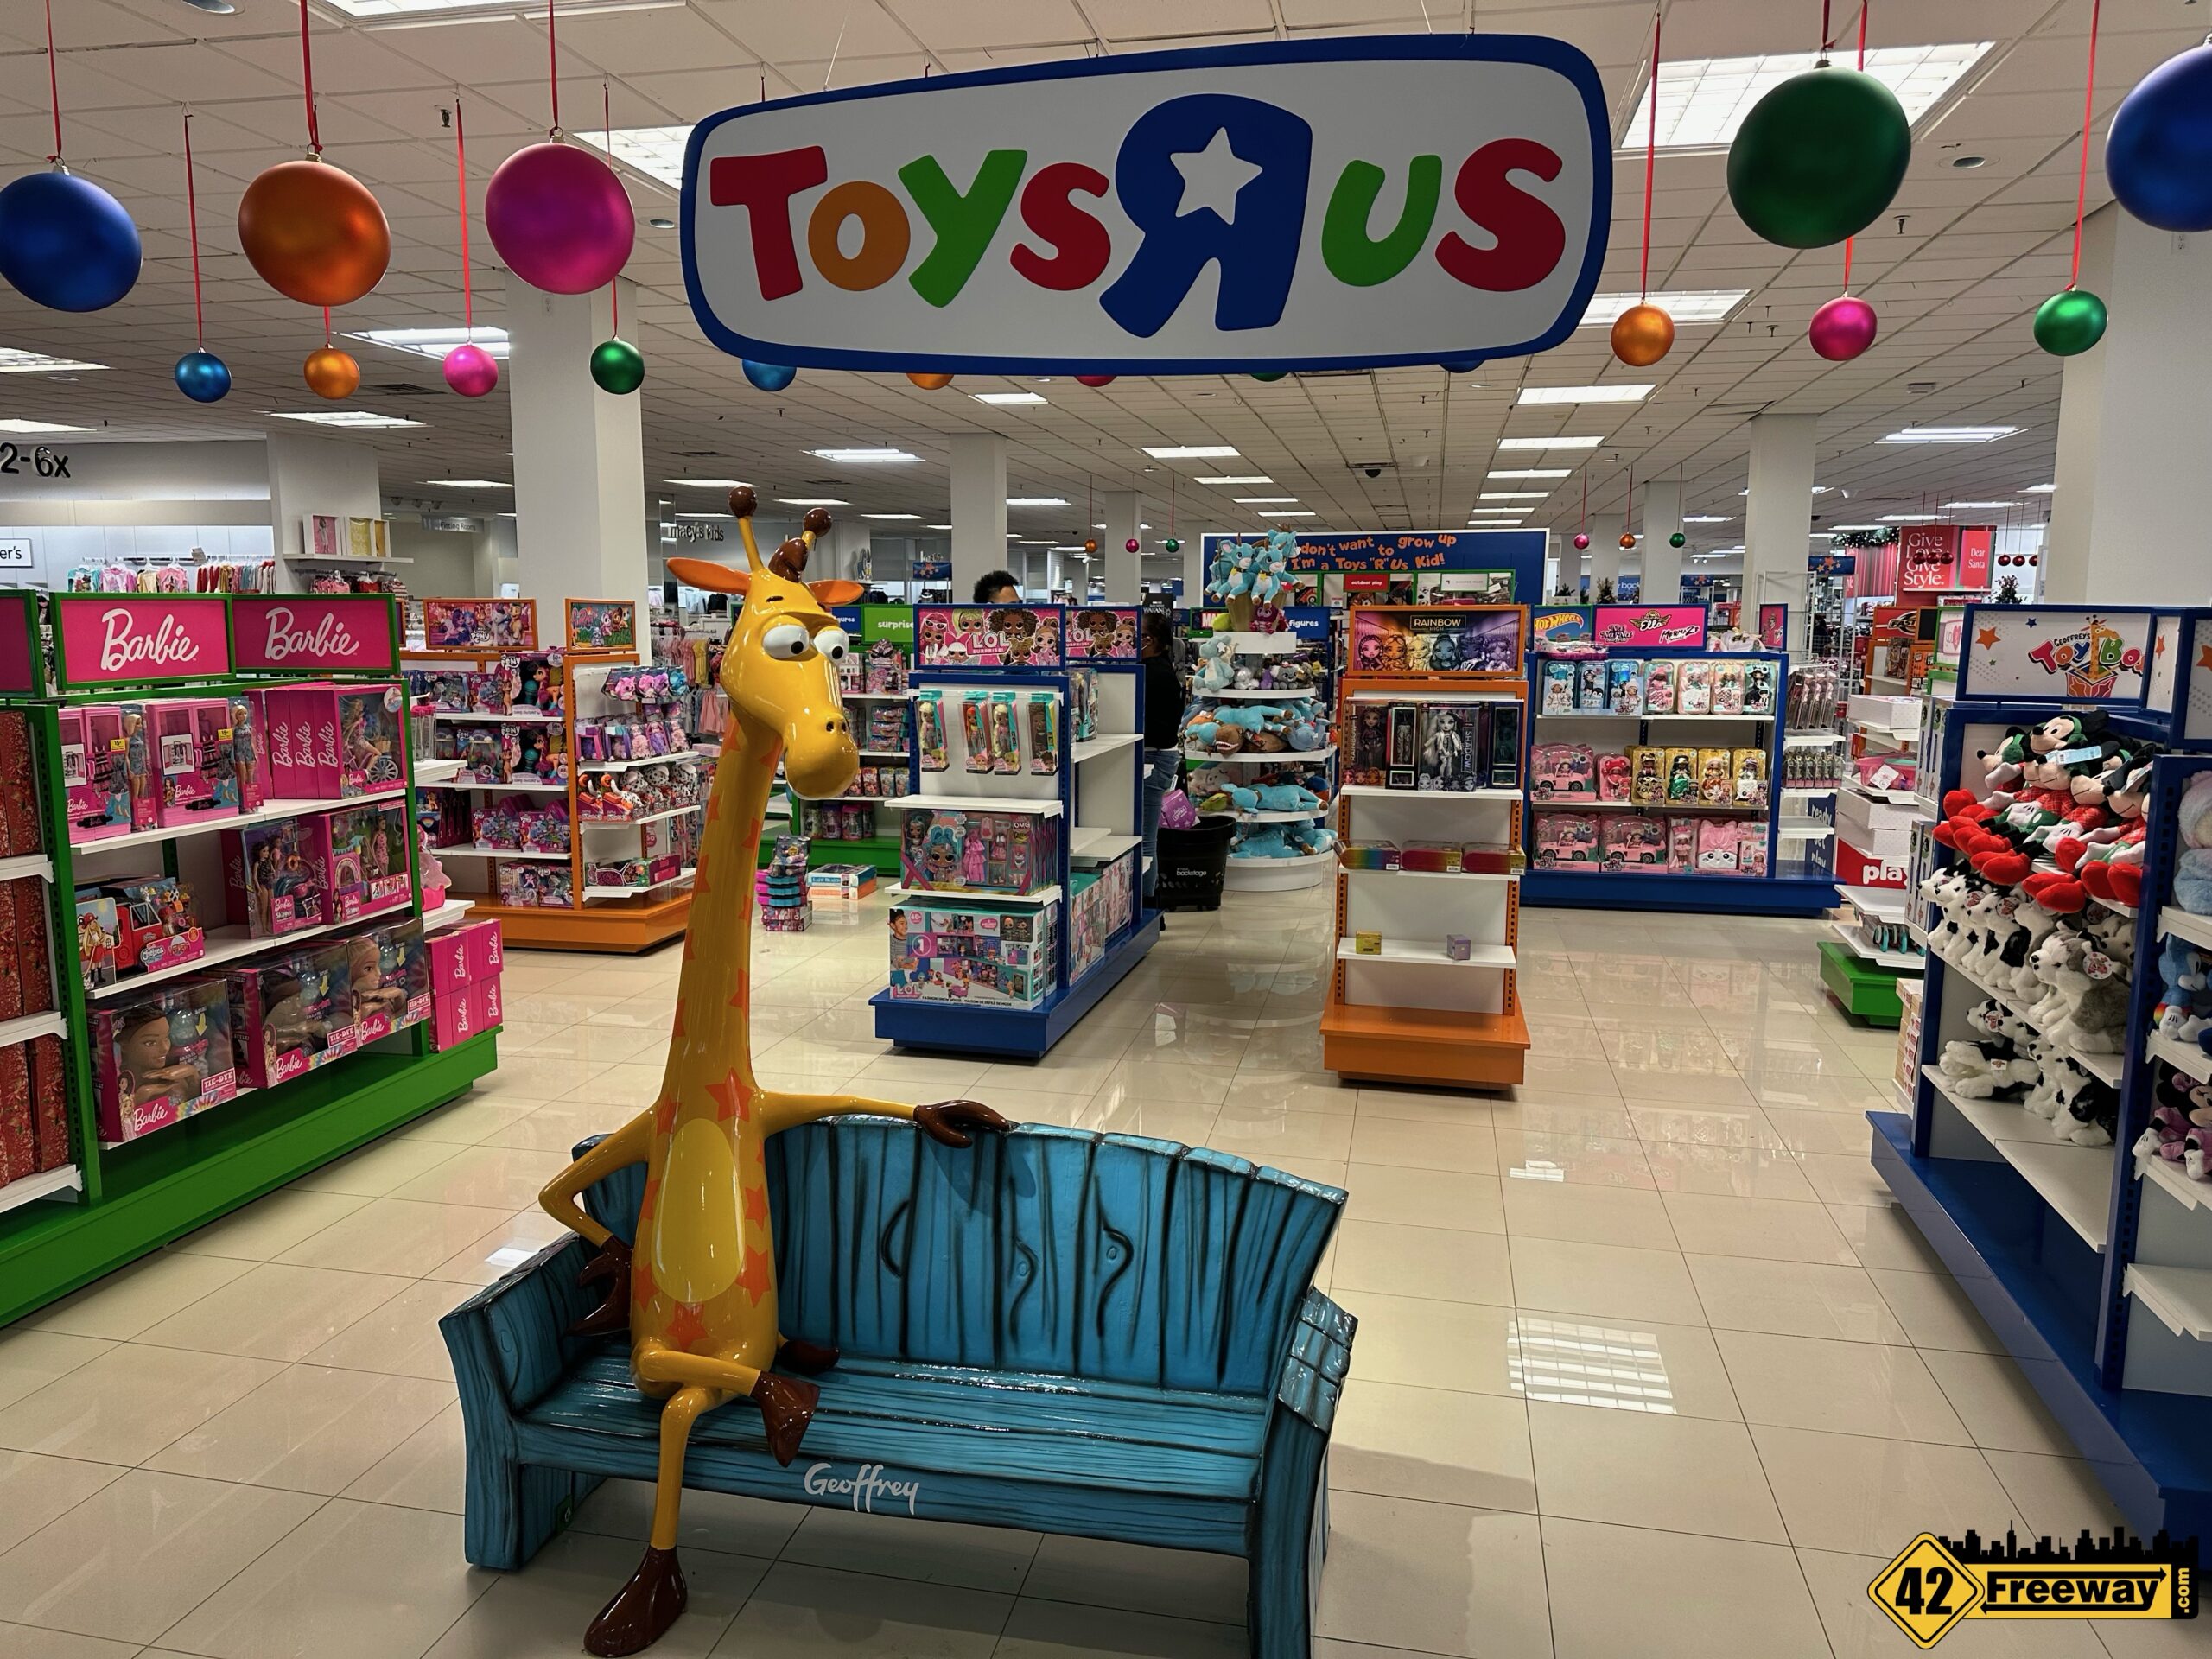 I Don't Want To Grow Up... Toys R Us is Open at Macy's. I Visited ...